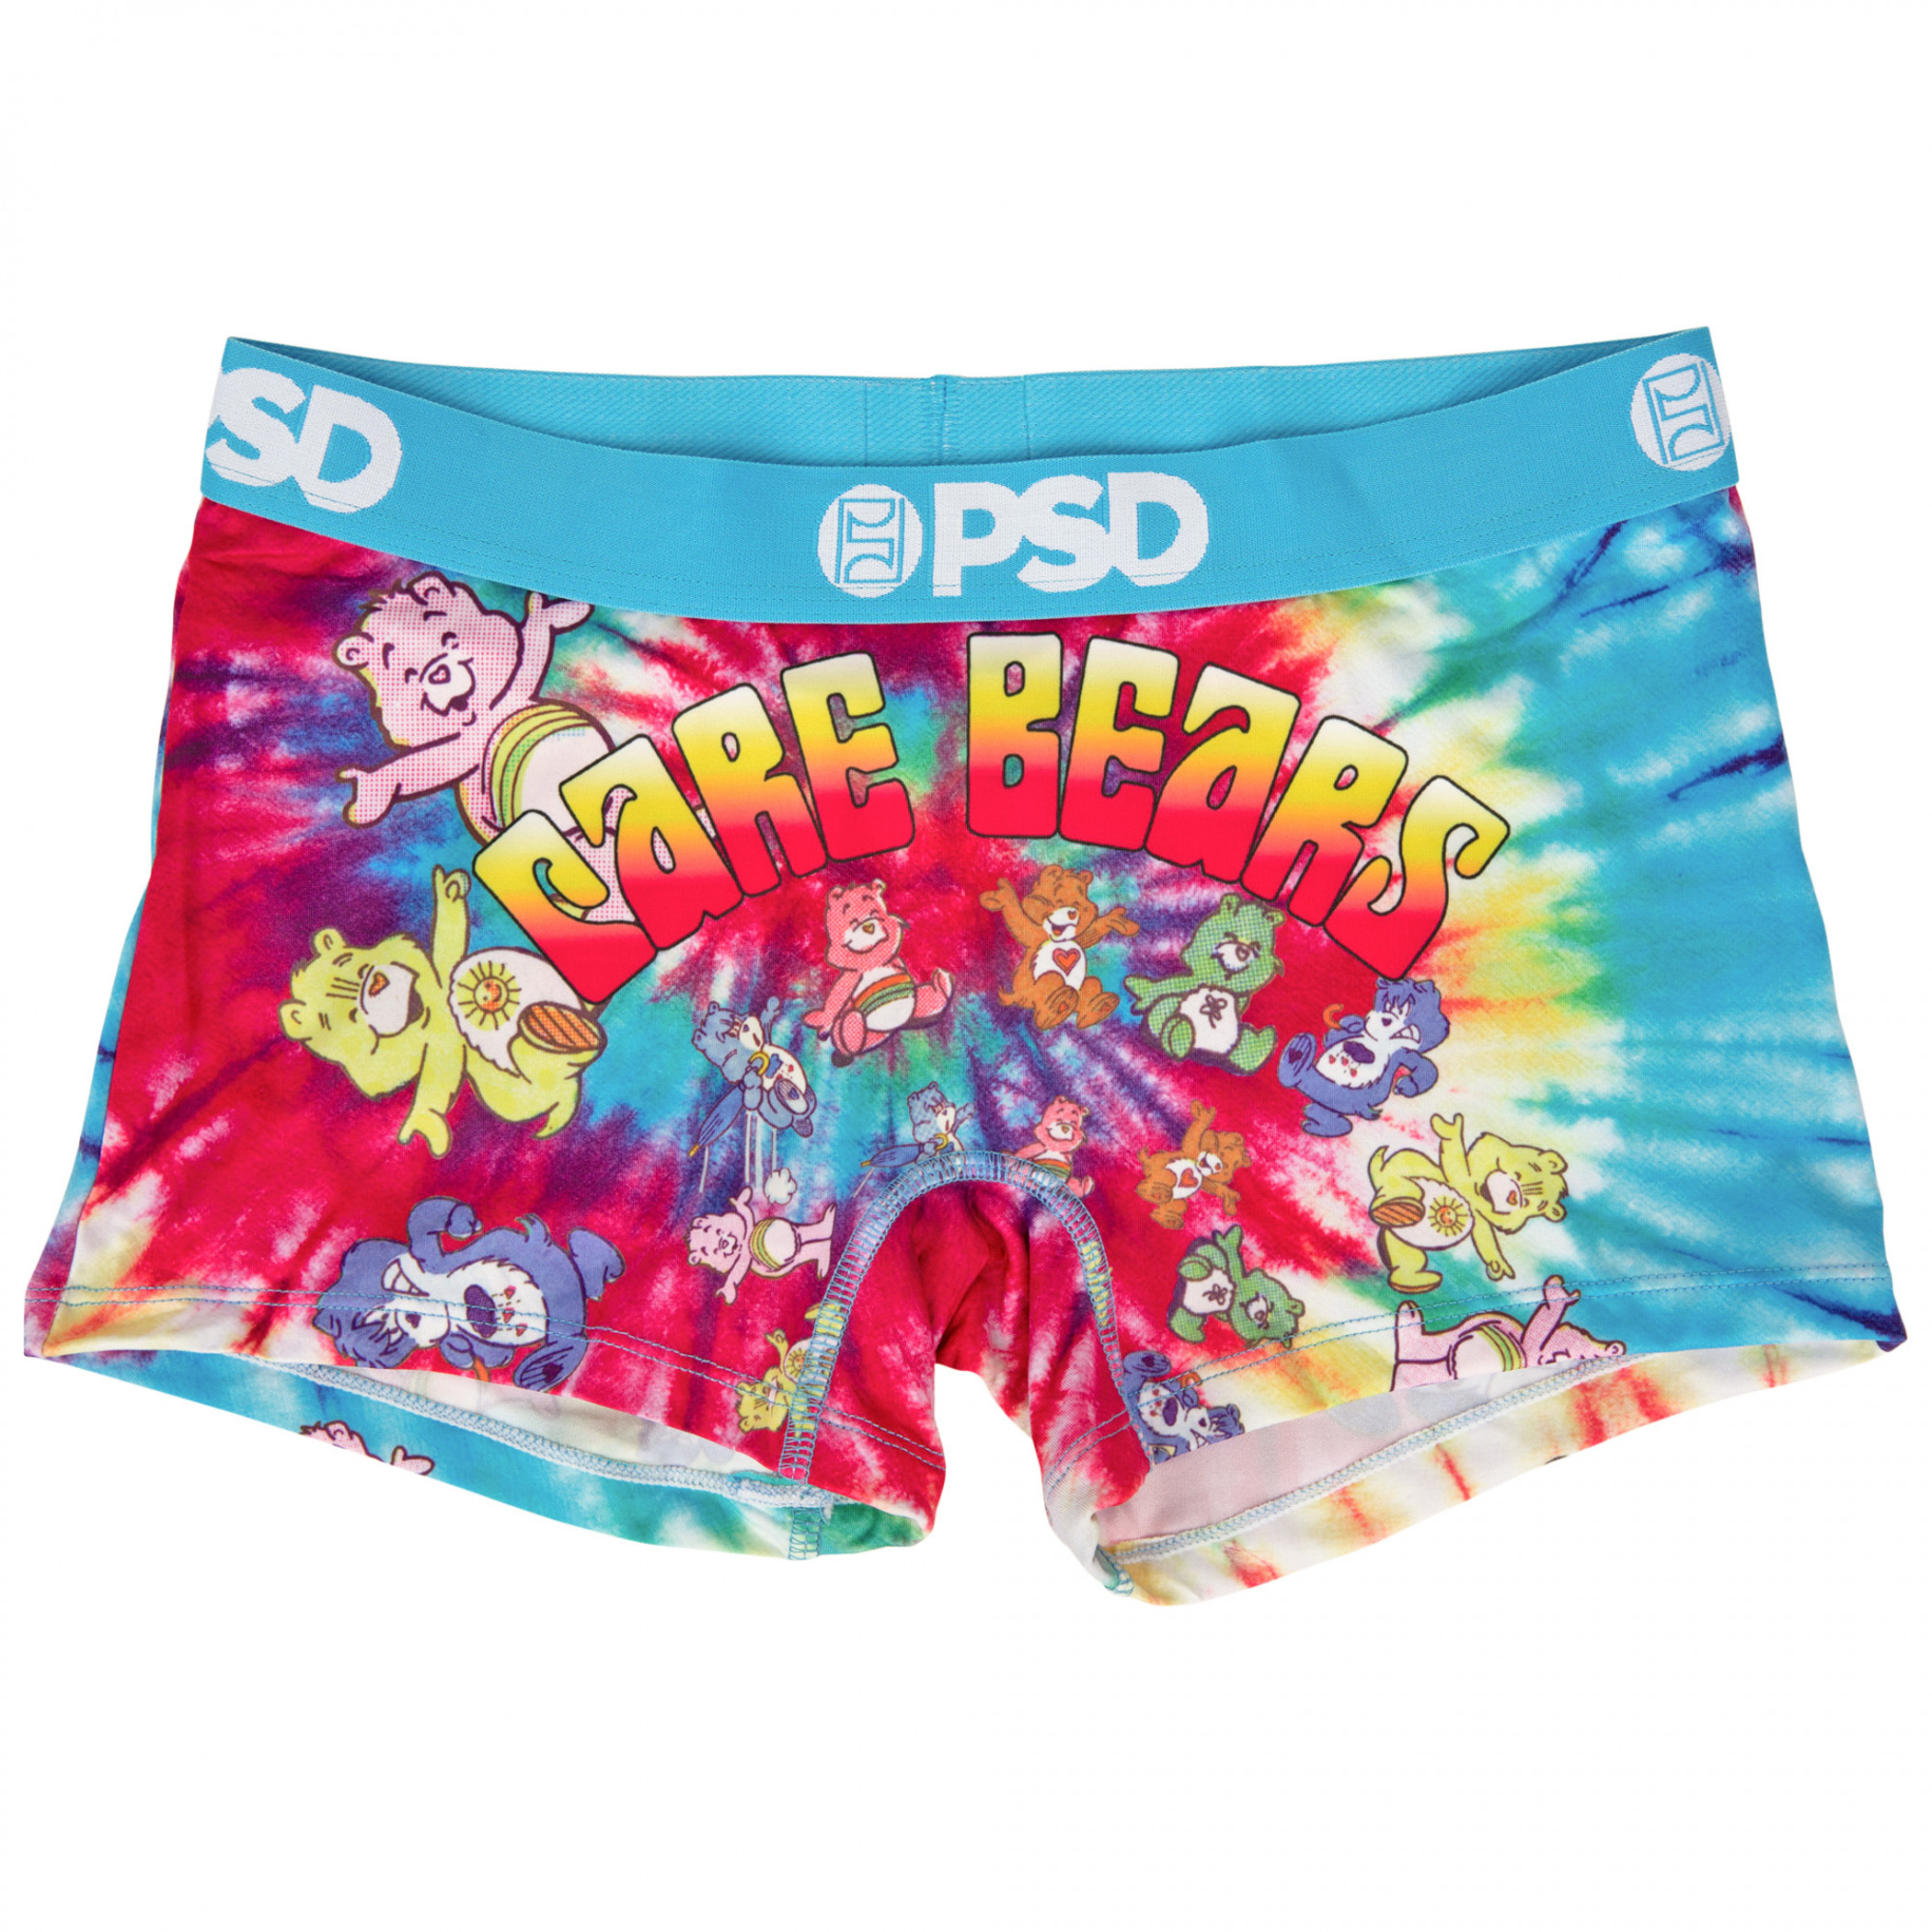 Care Bears Tie-Dye Spirals Boy Shorts PSD Underwear